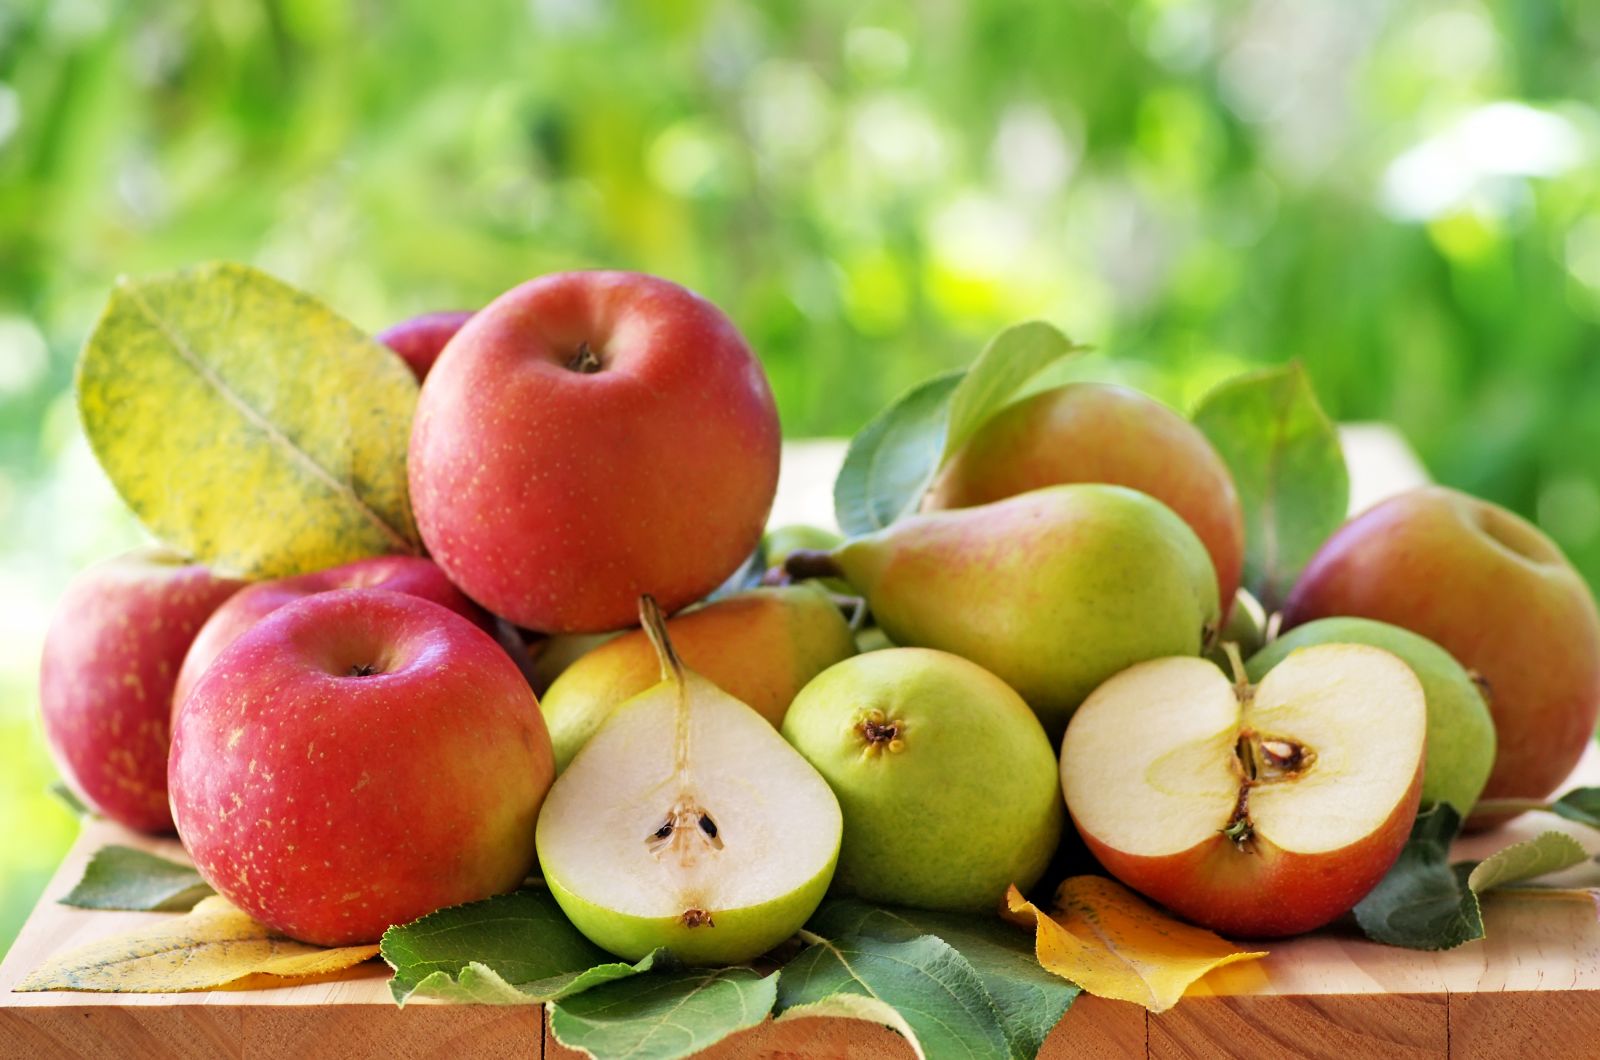 eating more fruit may help lower blood pressure - harvard health